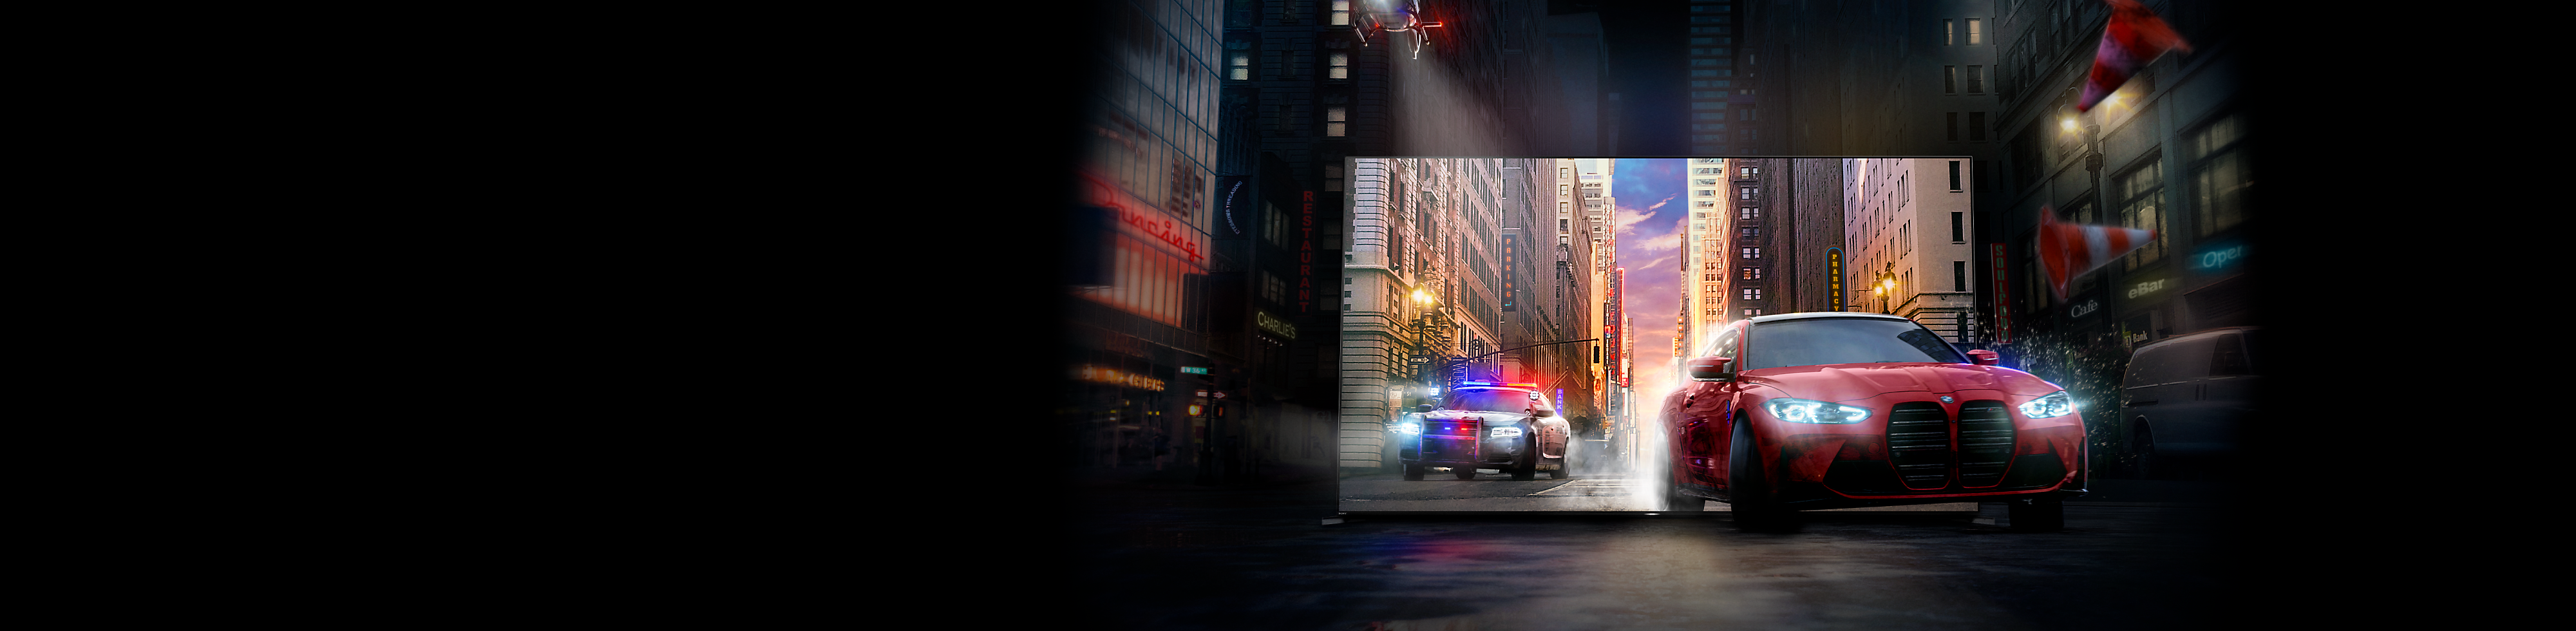 Une voiture rouge suivie par une voiture de police traverse l'écran de la TV BRAVIA pour arriver dans une rue